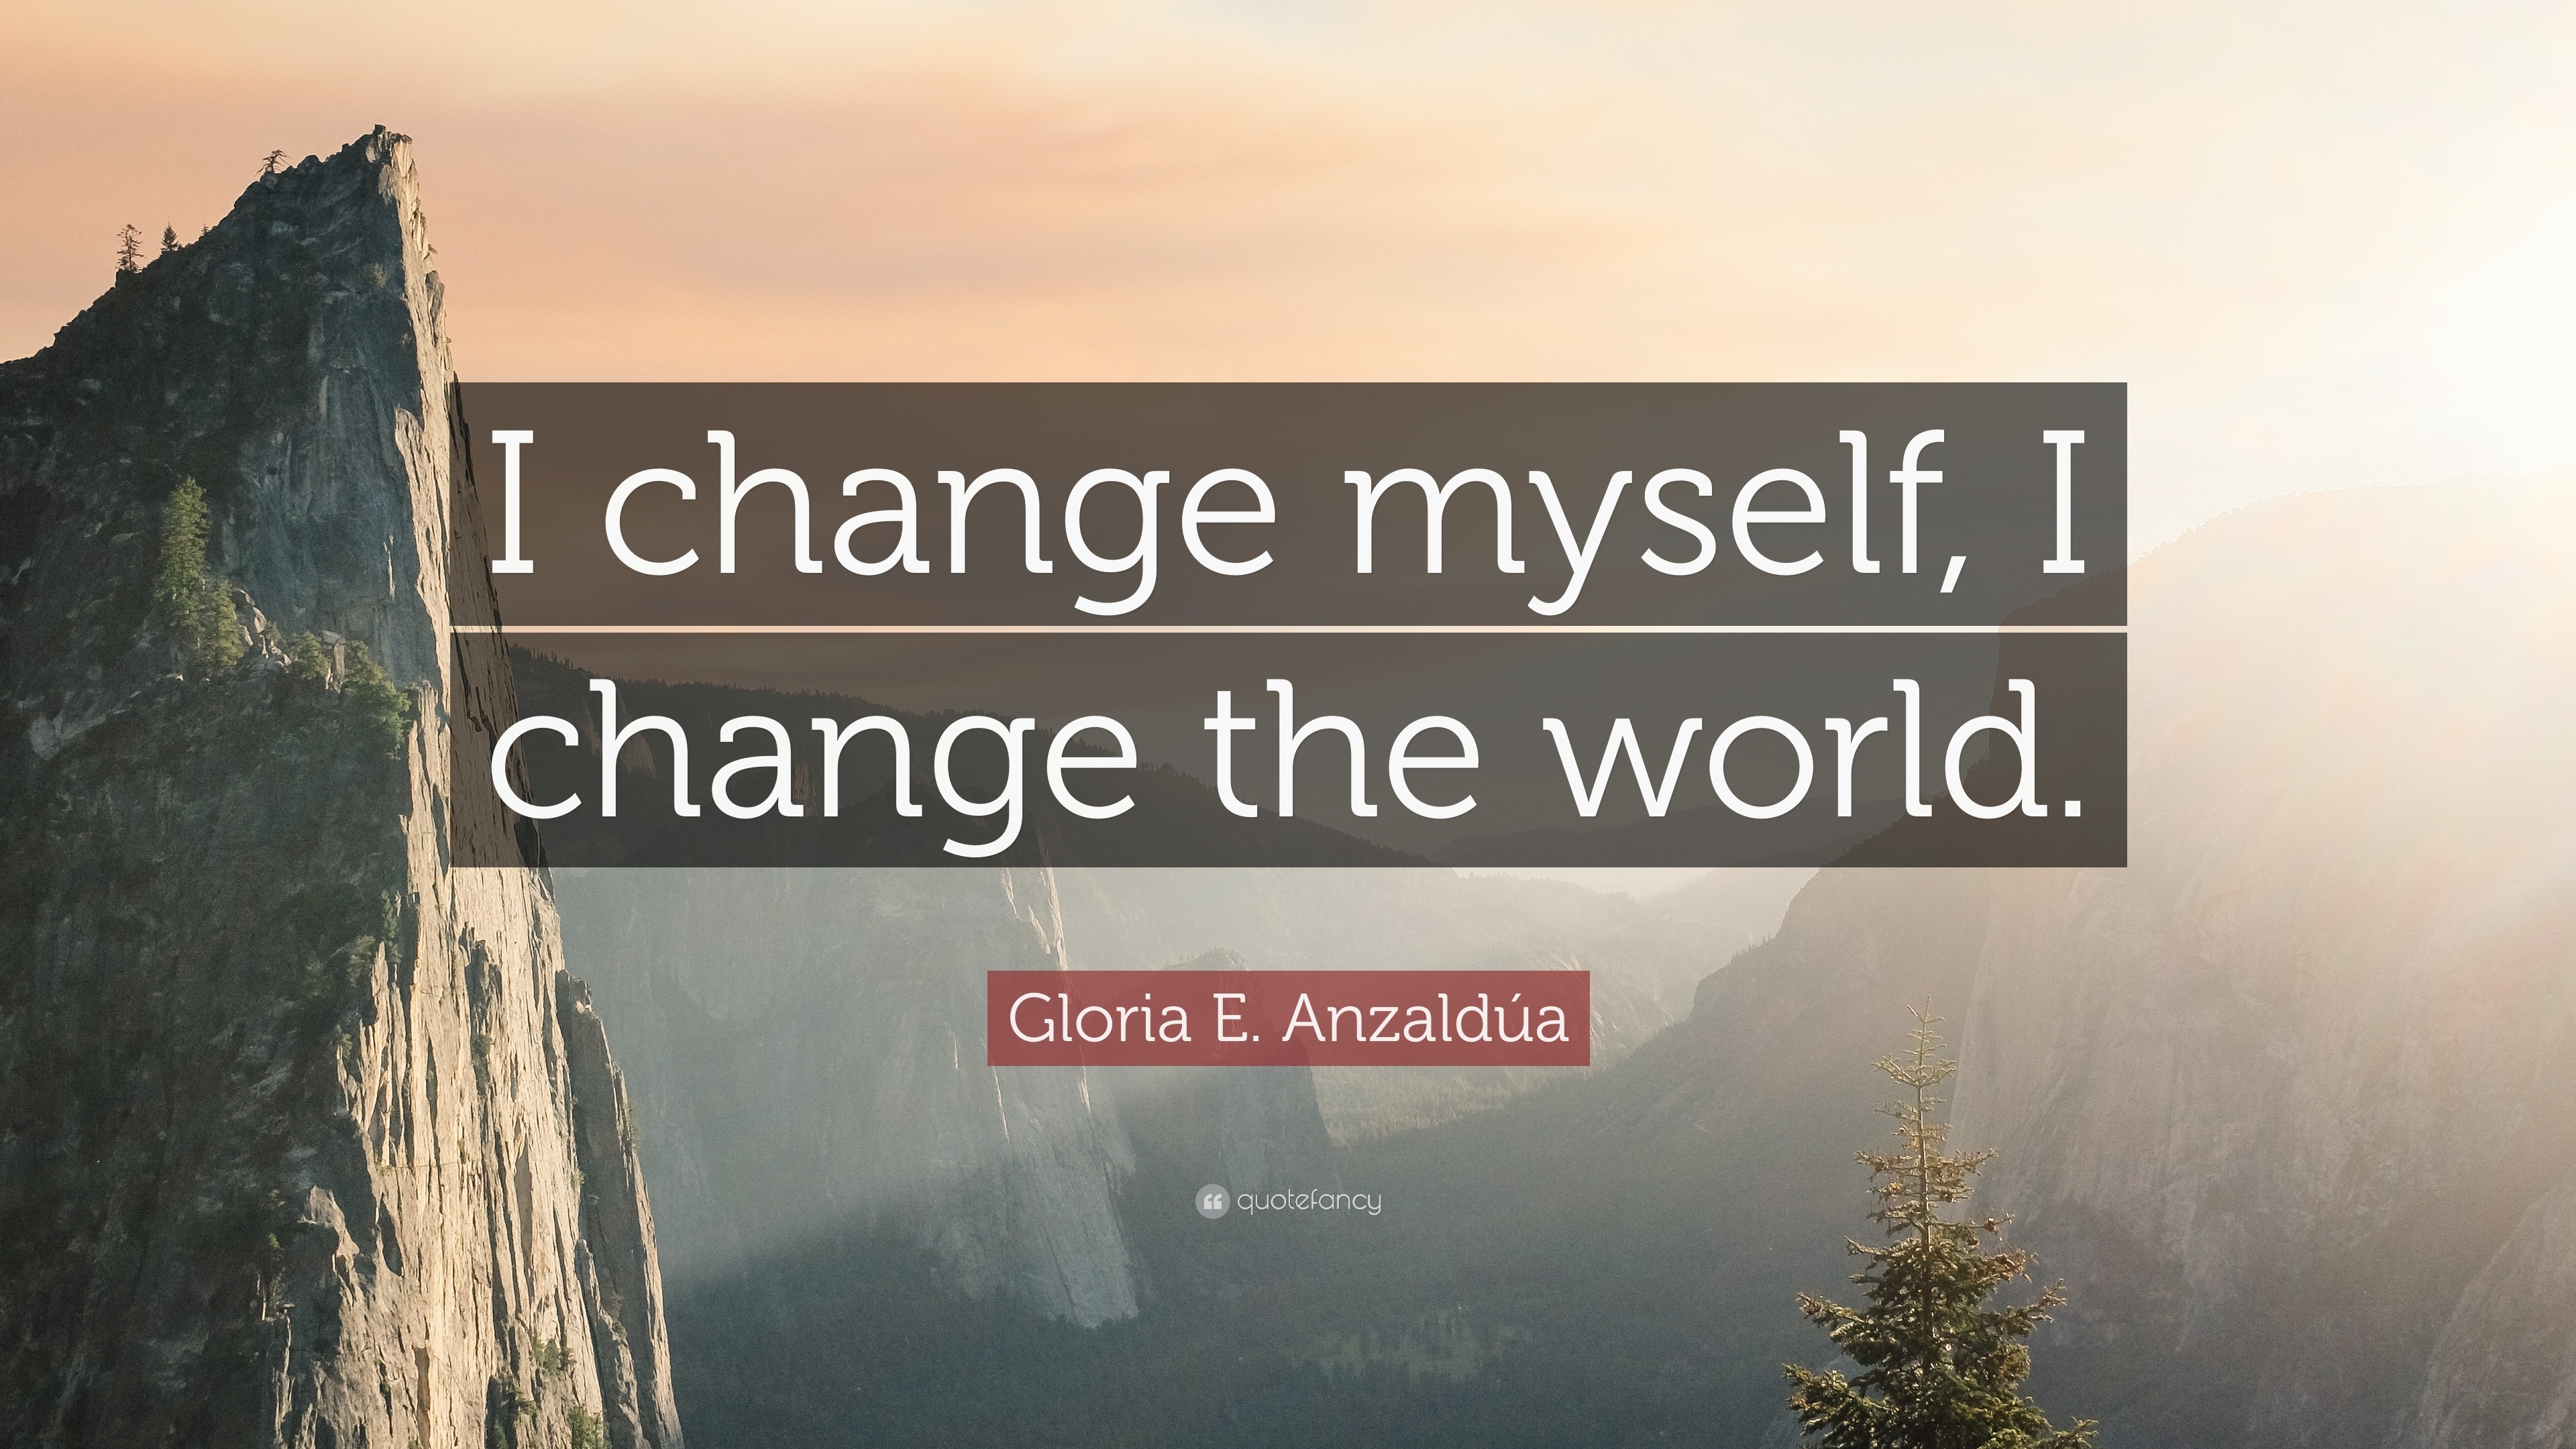 Gloria E. Anzaldúa Quote: “I change myself, I change the world.”